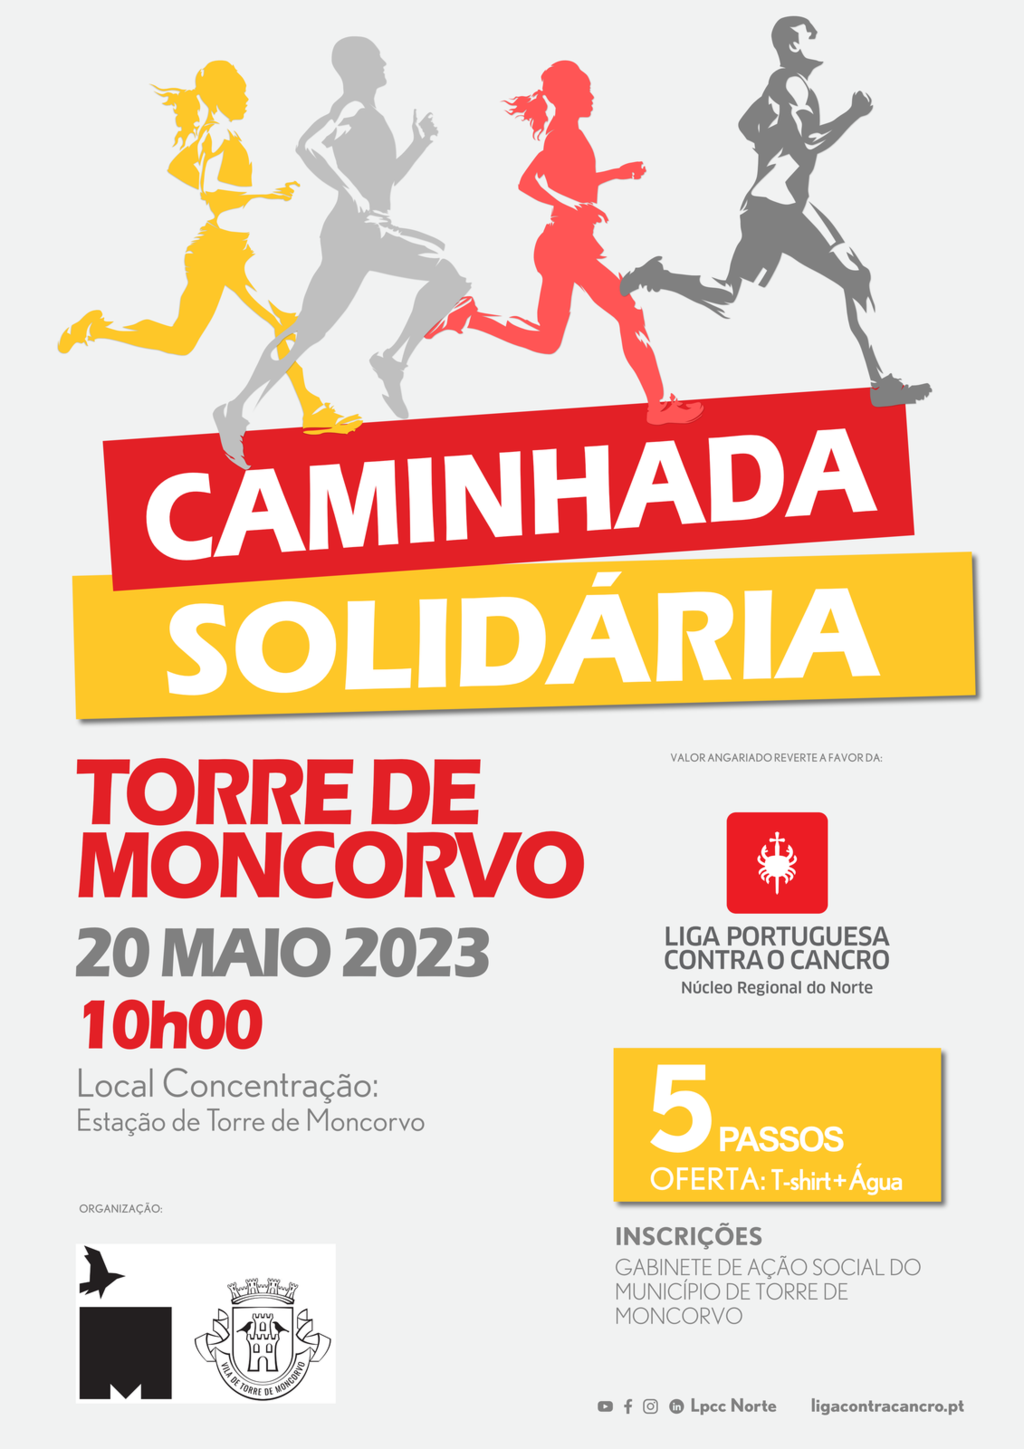 Caminhada Solidária que reverte a favor da Liga Portuguesa Contra o Cancro